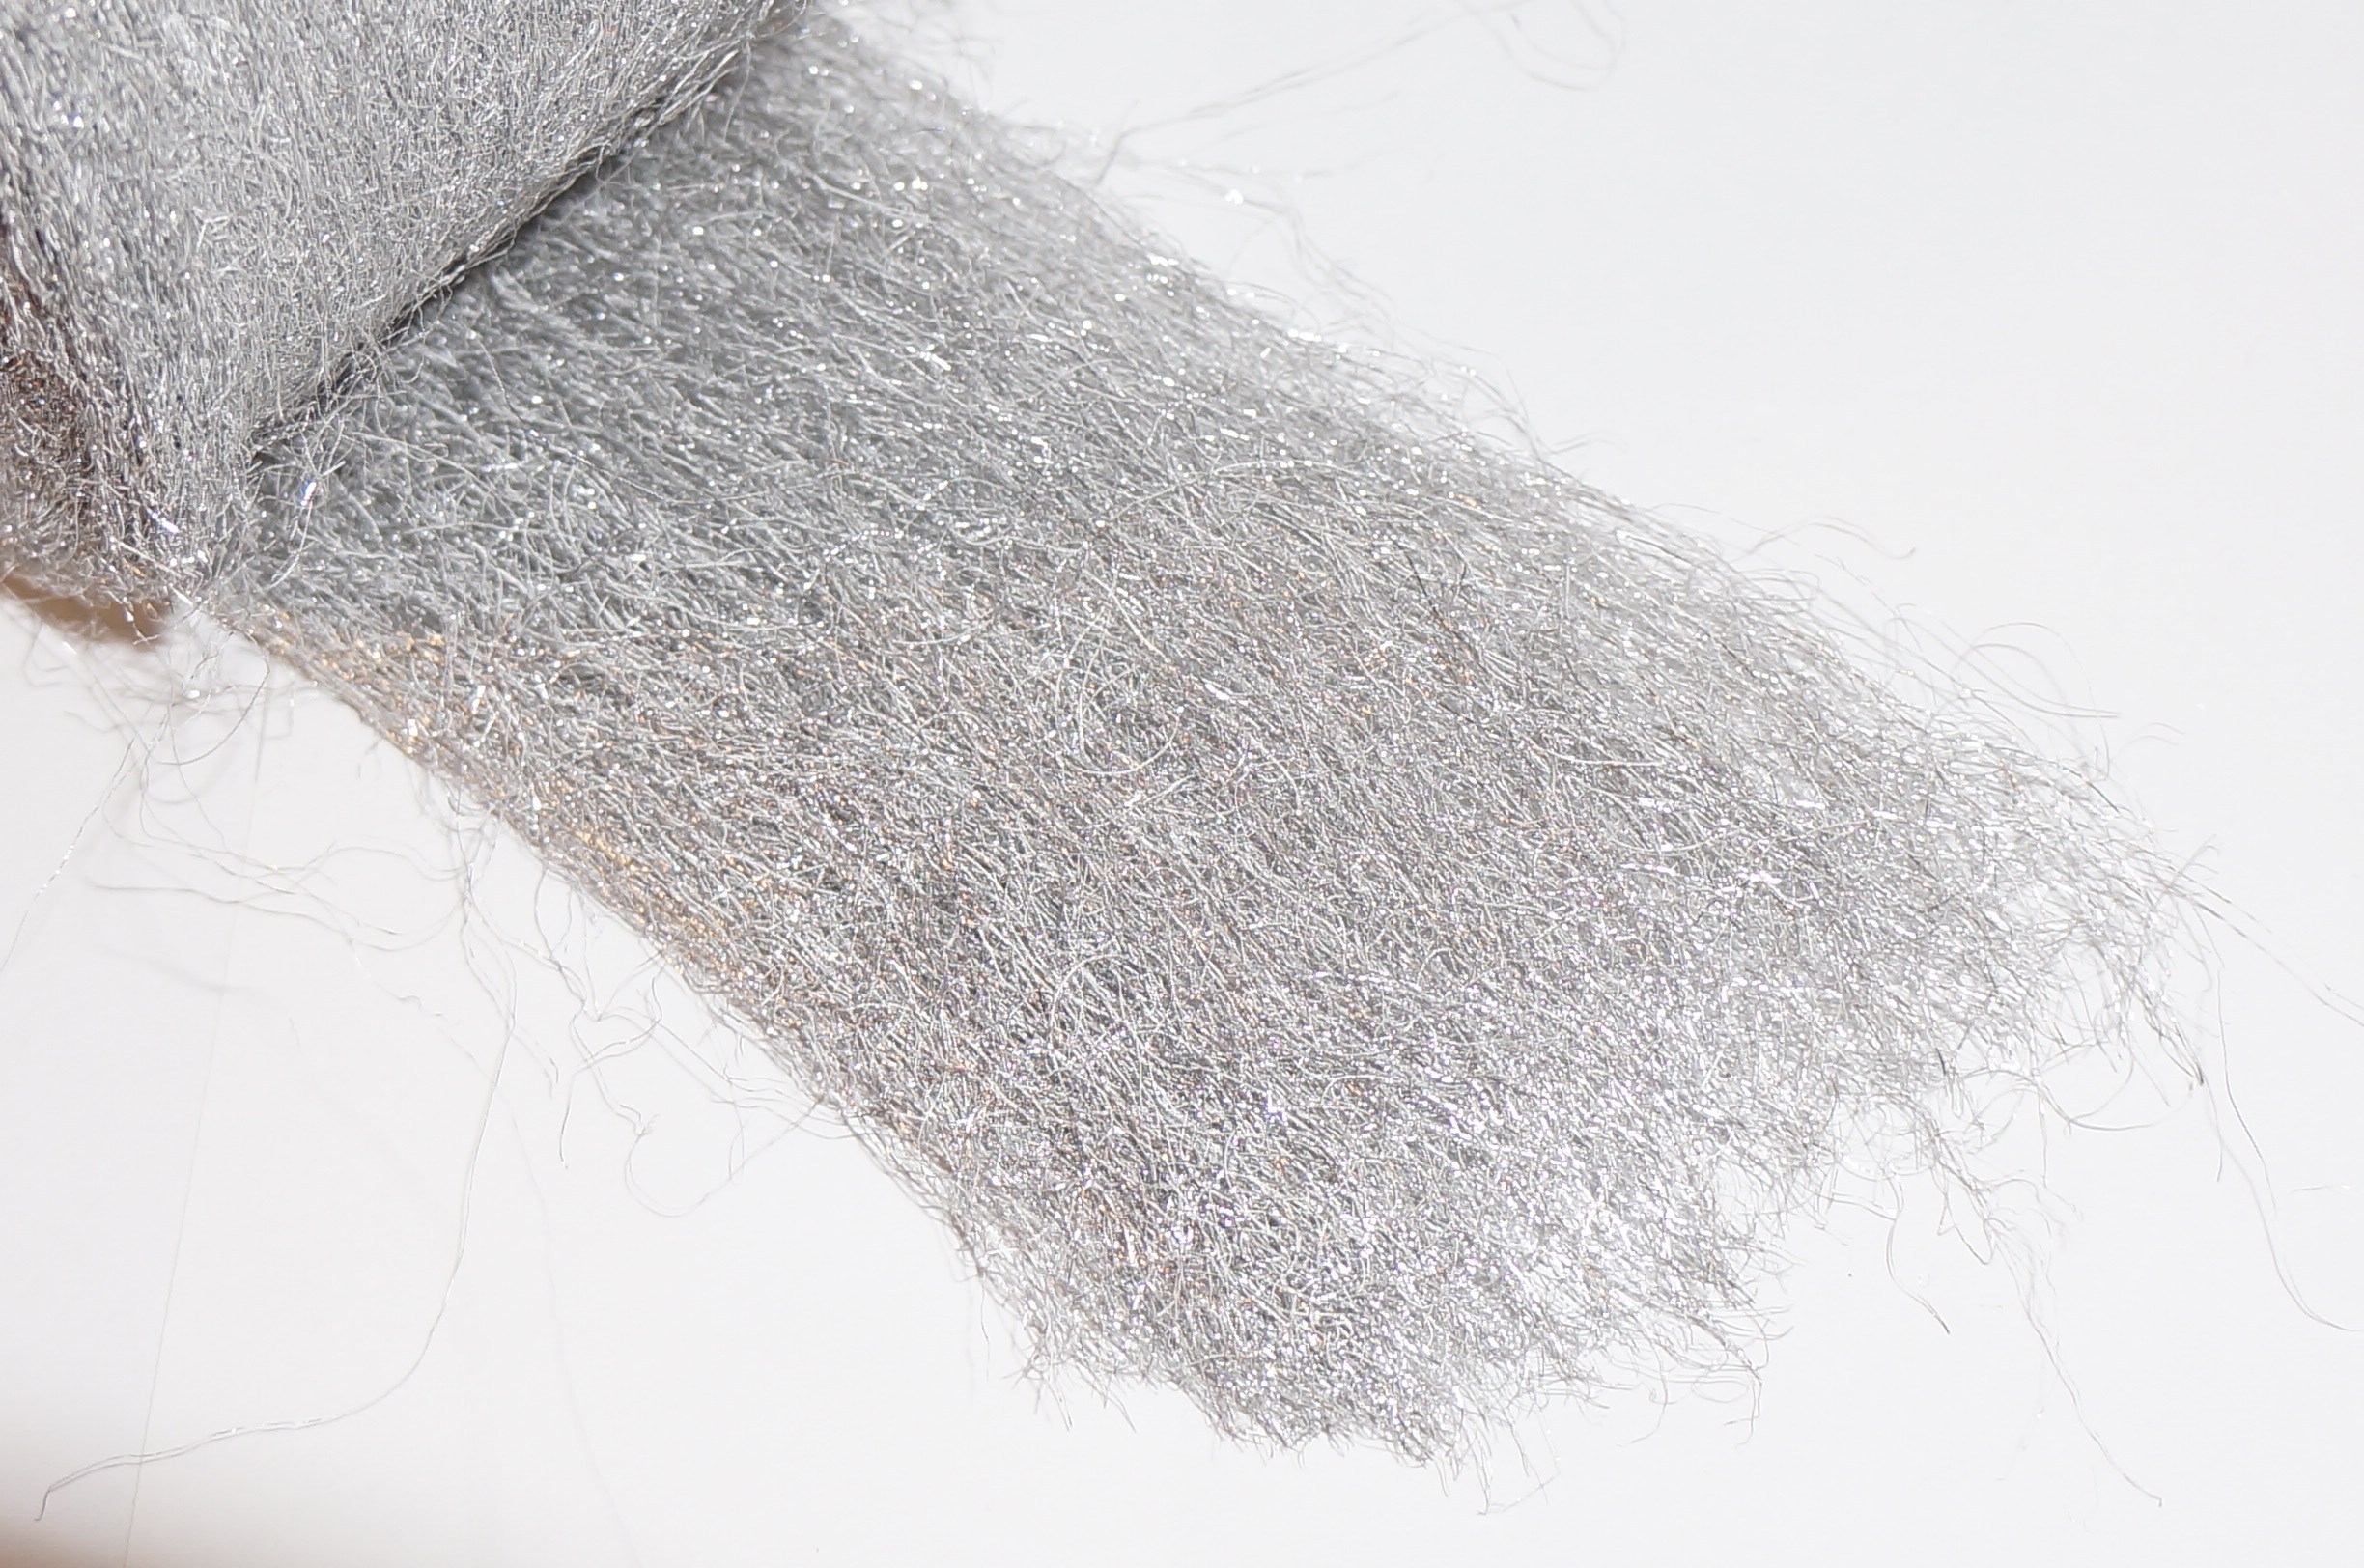 Lustersheen 5 lb Bronze Wool Reel (Web is 4″ Wide x approx 90 feet